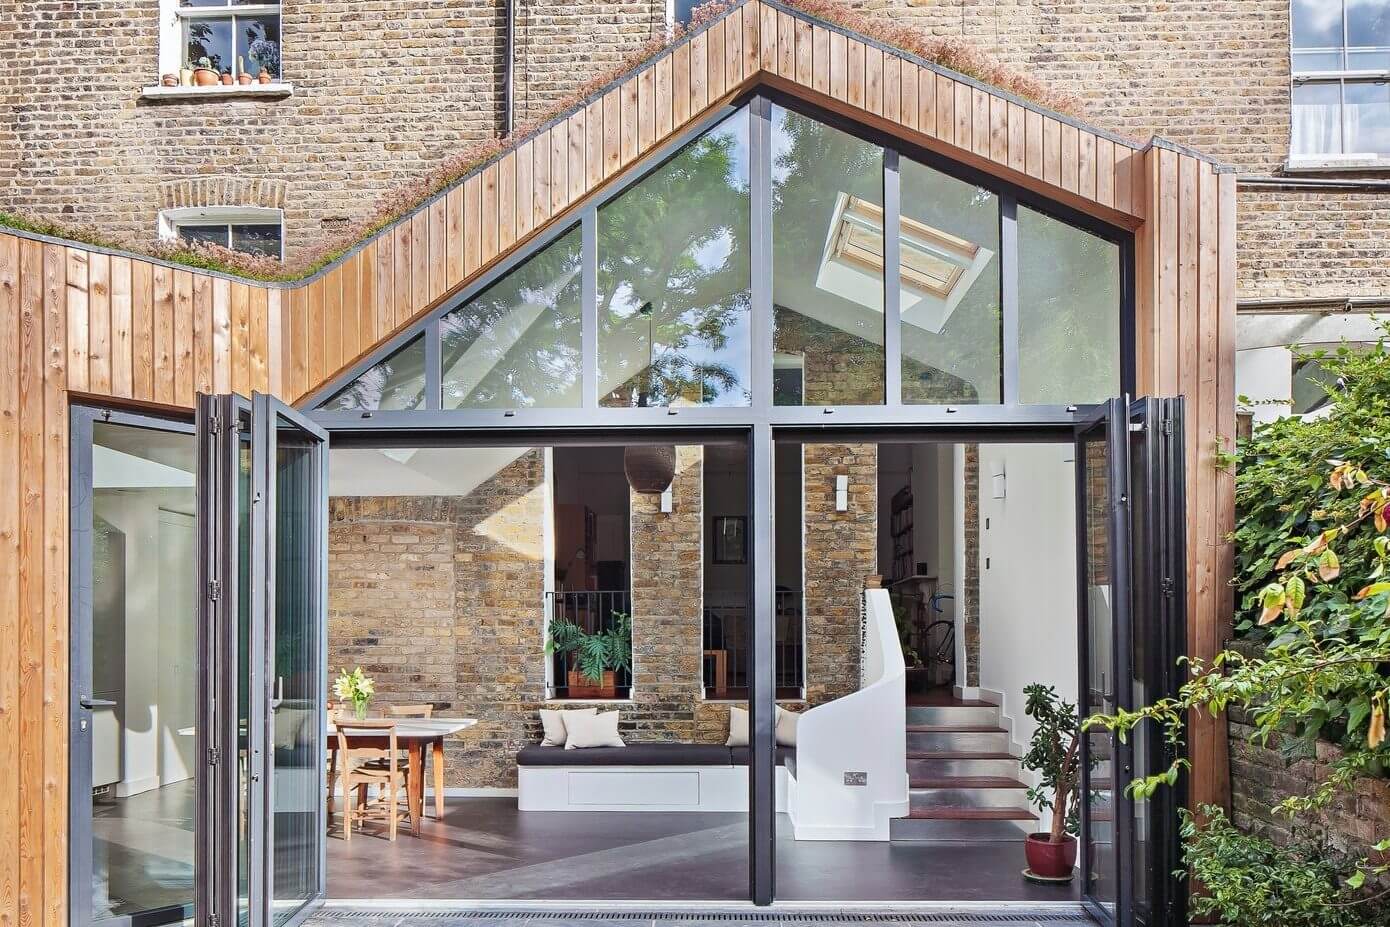 Clapton Home by Scenario Architecture